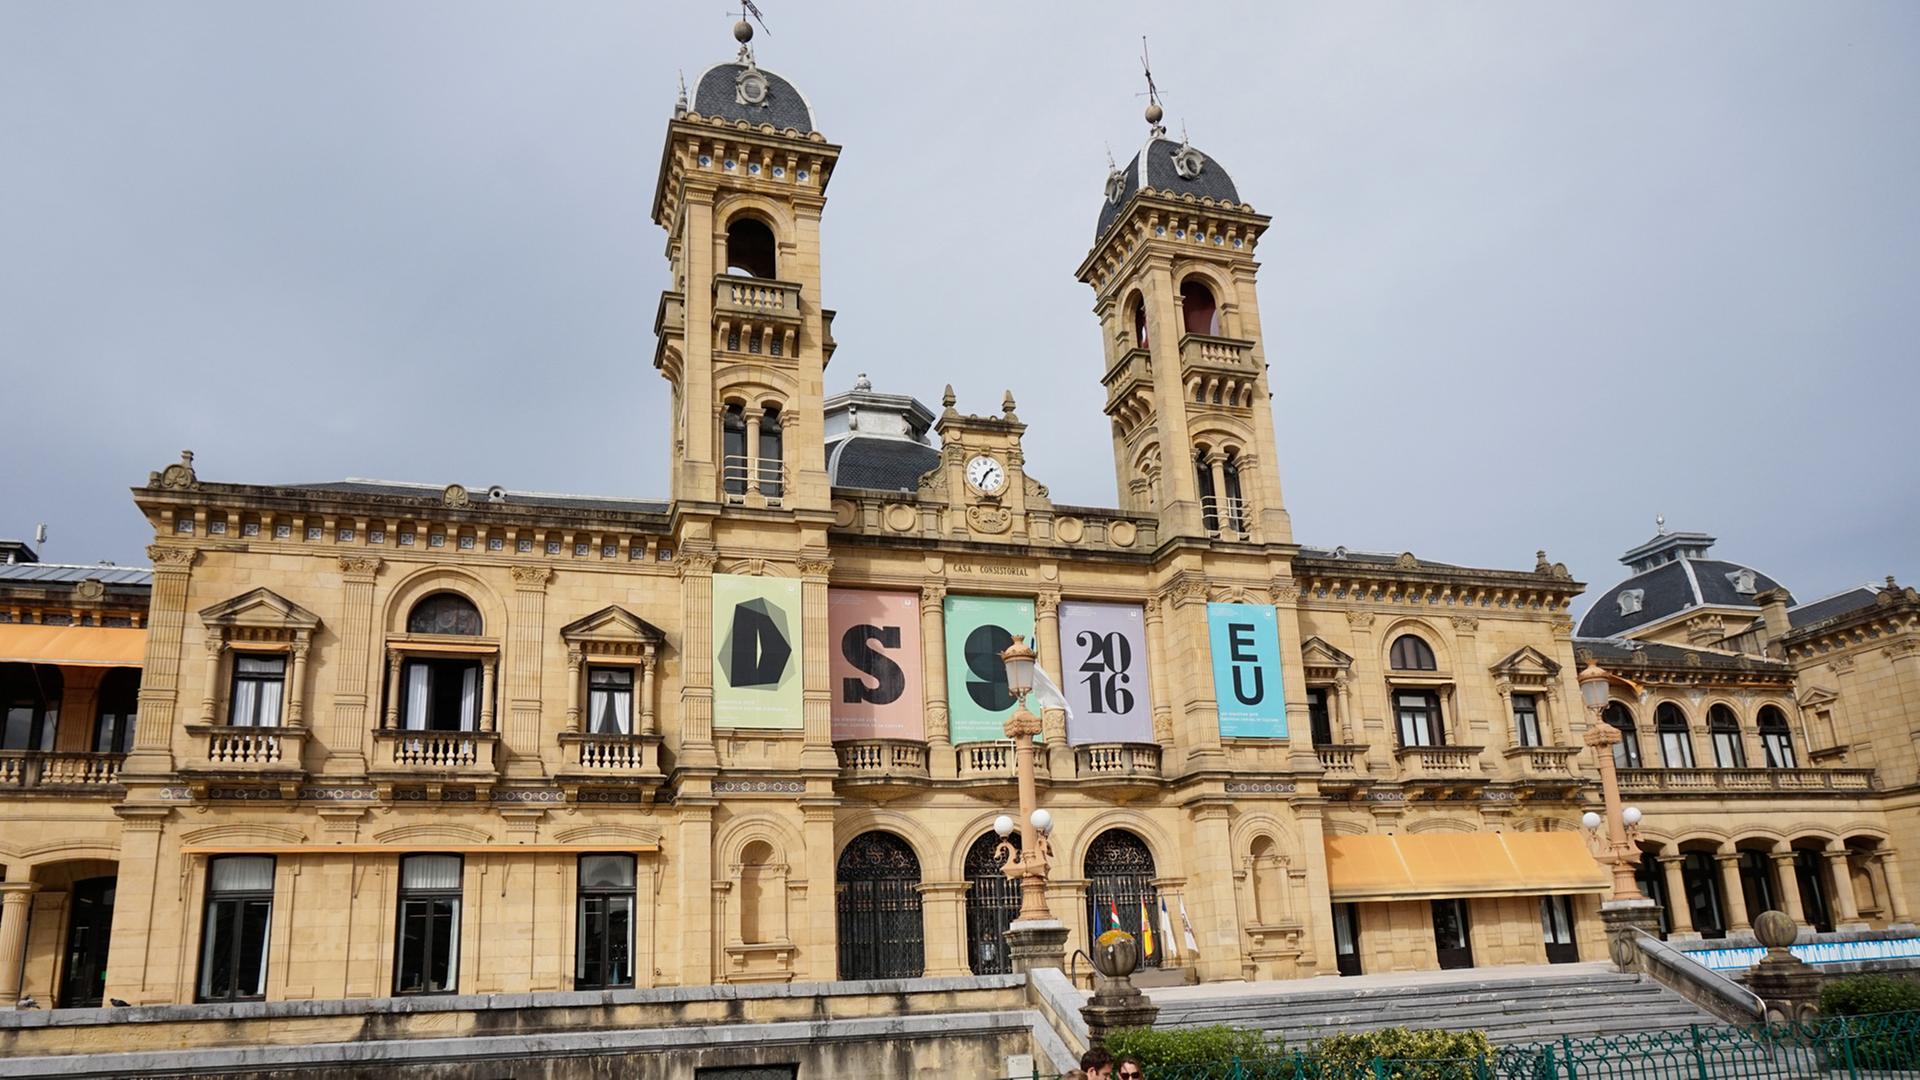 Am Rathaus von San Sebastian sind Plakate befestigt, die auf die Auszeichnung als Europäische Kulturhauptstadt 2016 hinweisen.